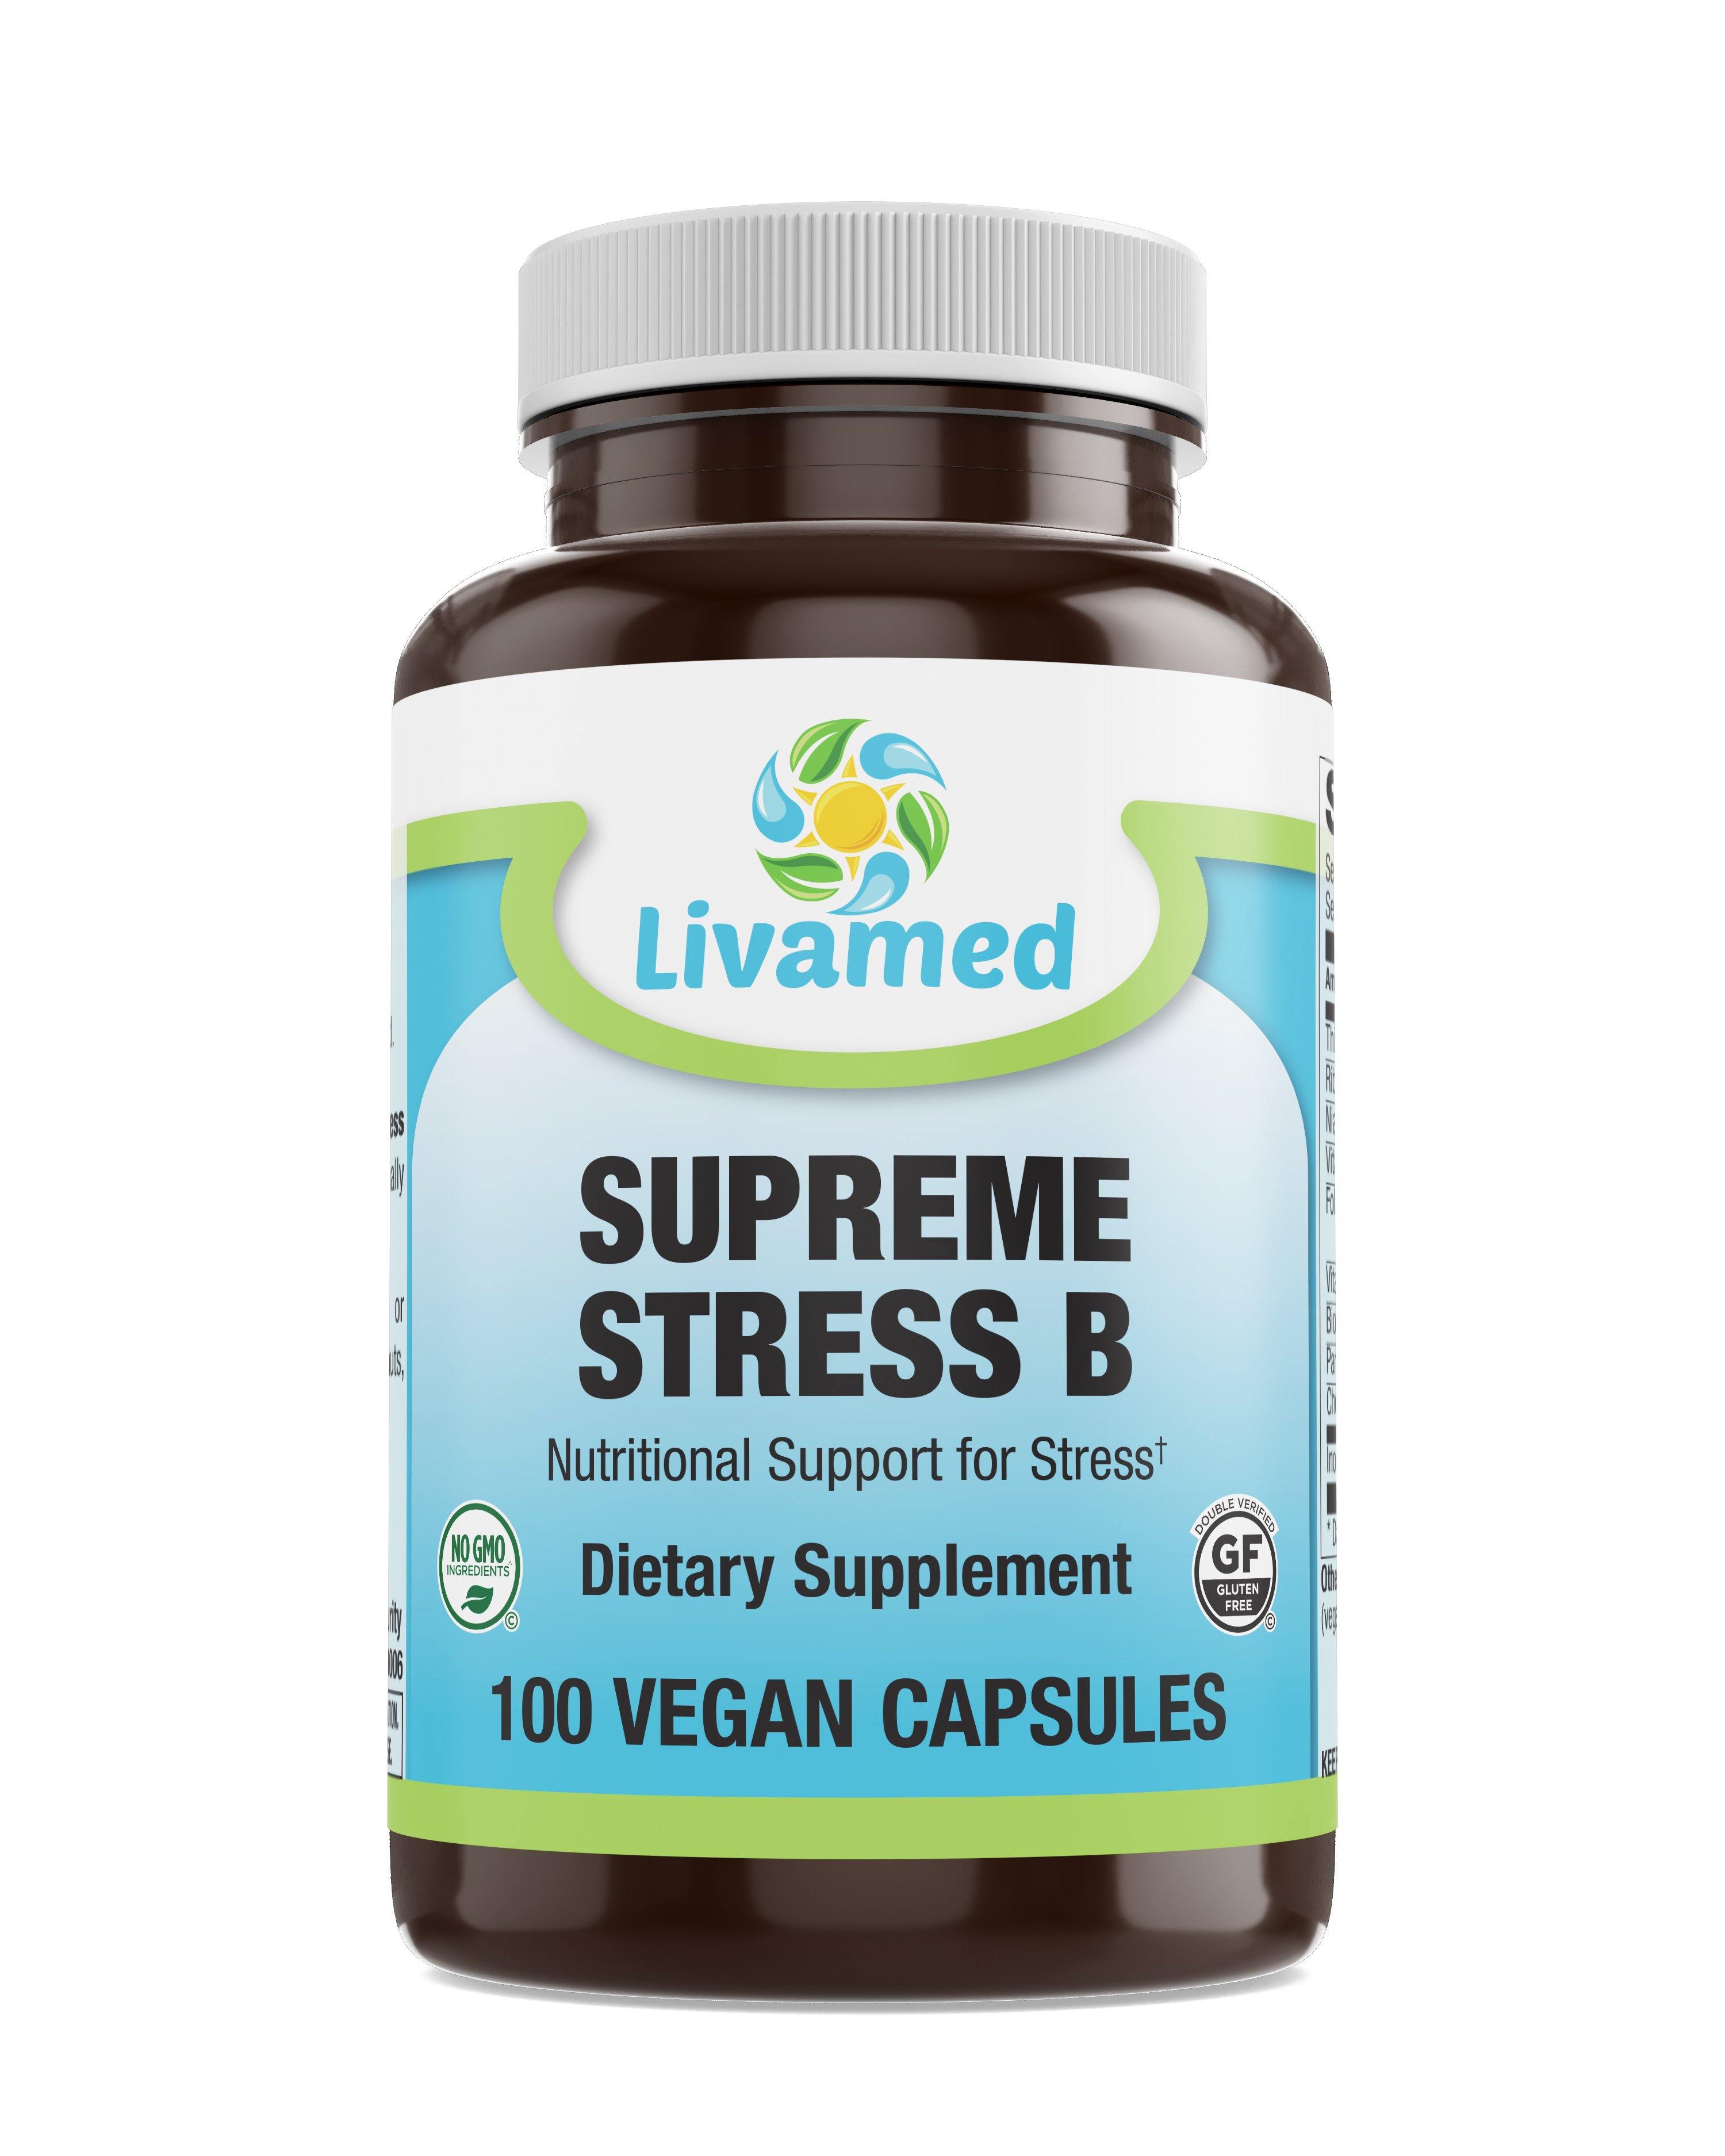 Livamed - Supreme Stress B Veg Caps 100 Count - Livamed Vitamins